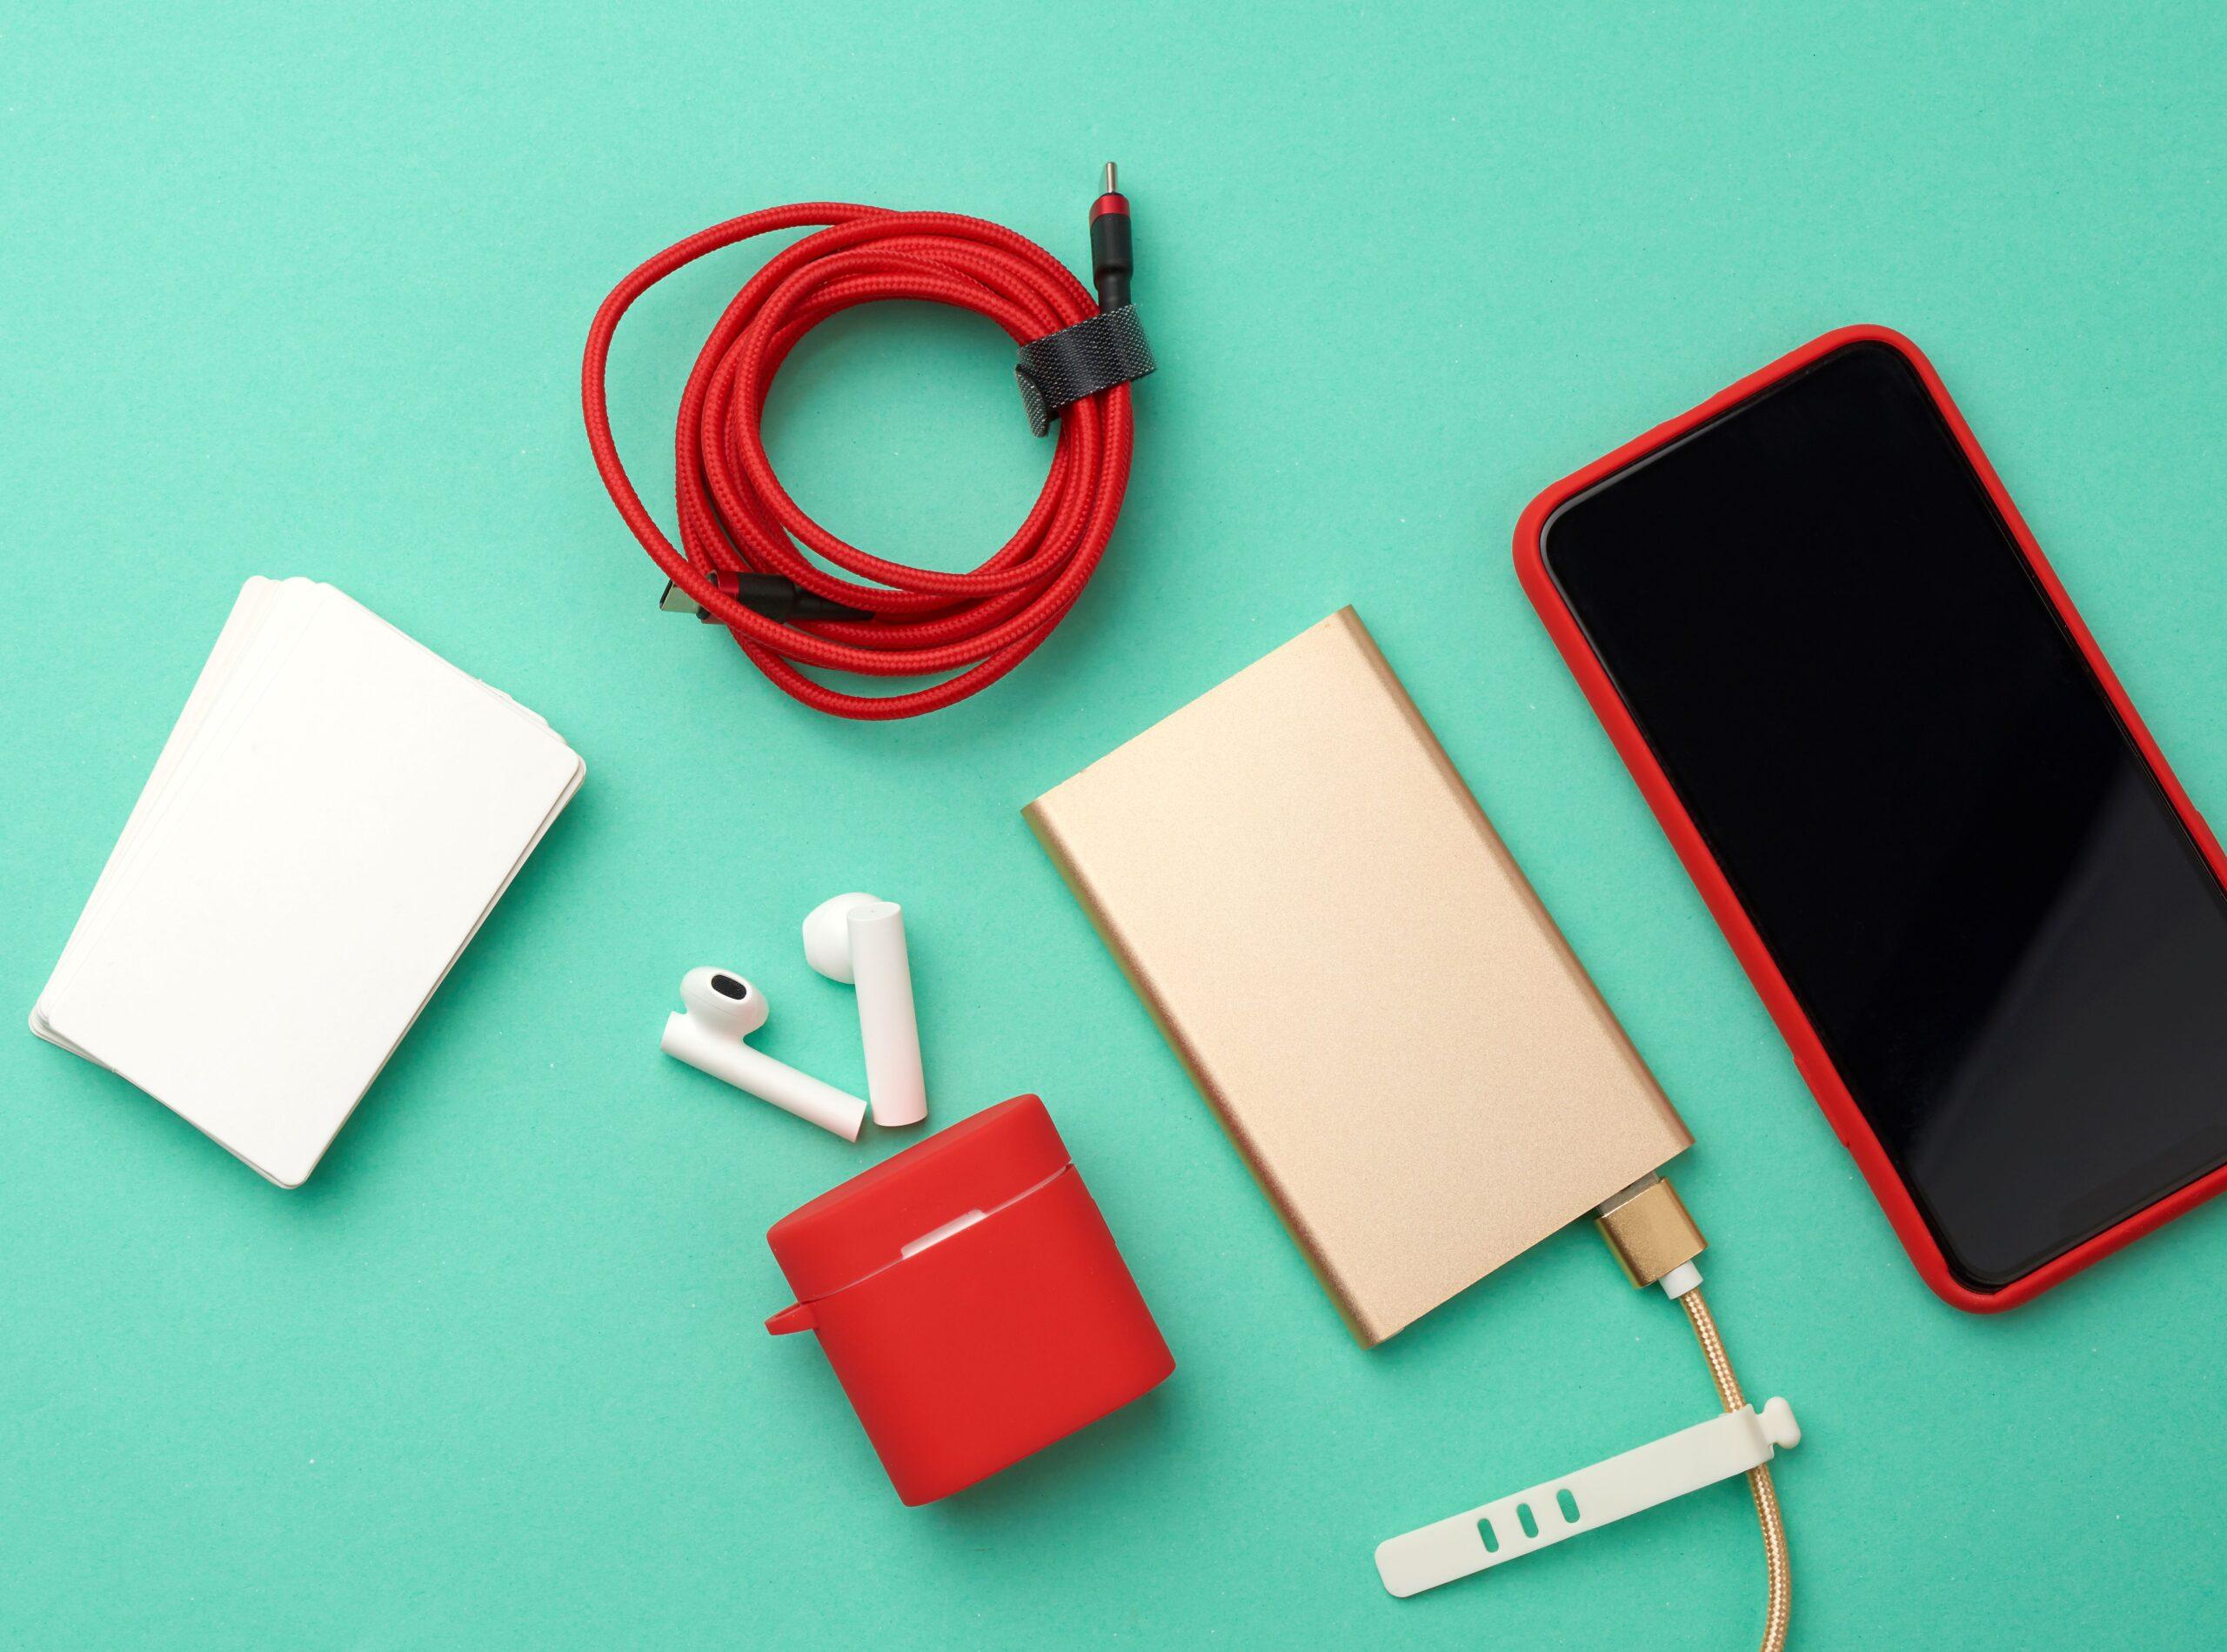 goldene Powerbank mit Kabel, rotes Smartphone mit leerem schwarzen Bildschirm, Box mit Kopfhörern, leere Visitenkarte aus Papier